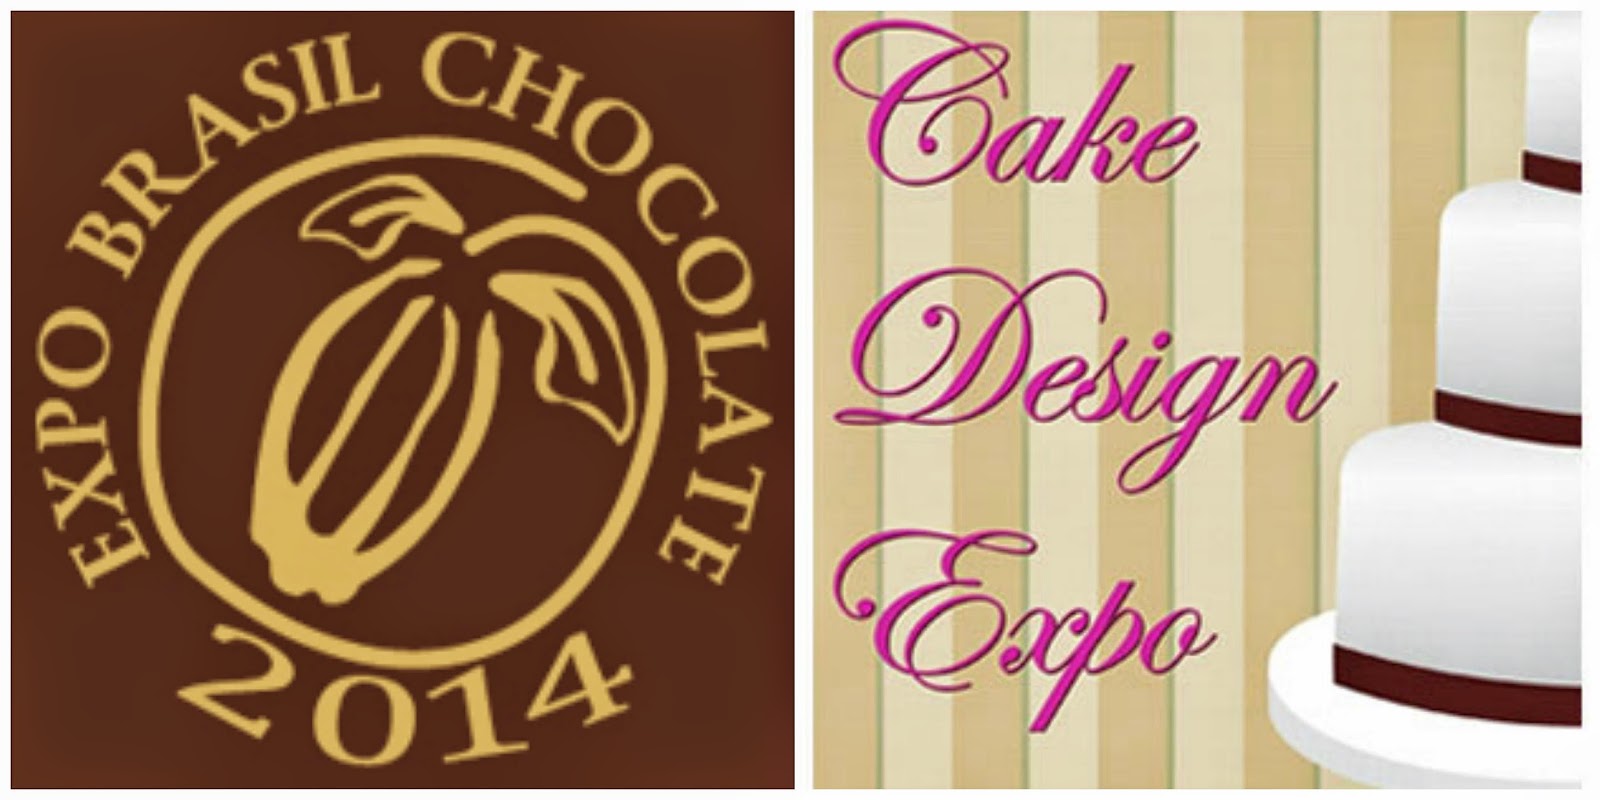 Expo Brasil Chocolate 2014, Cake Design Expo e Evento Casa União - parte II